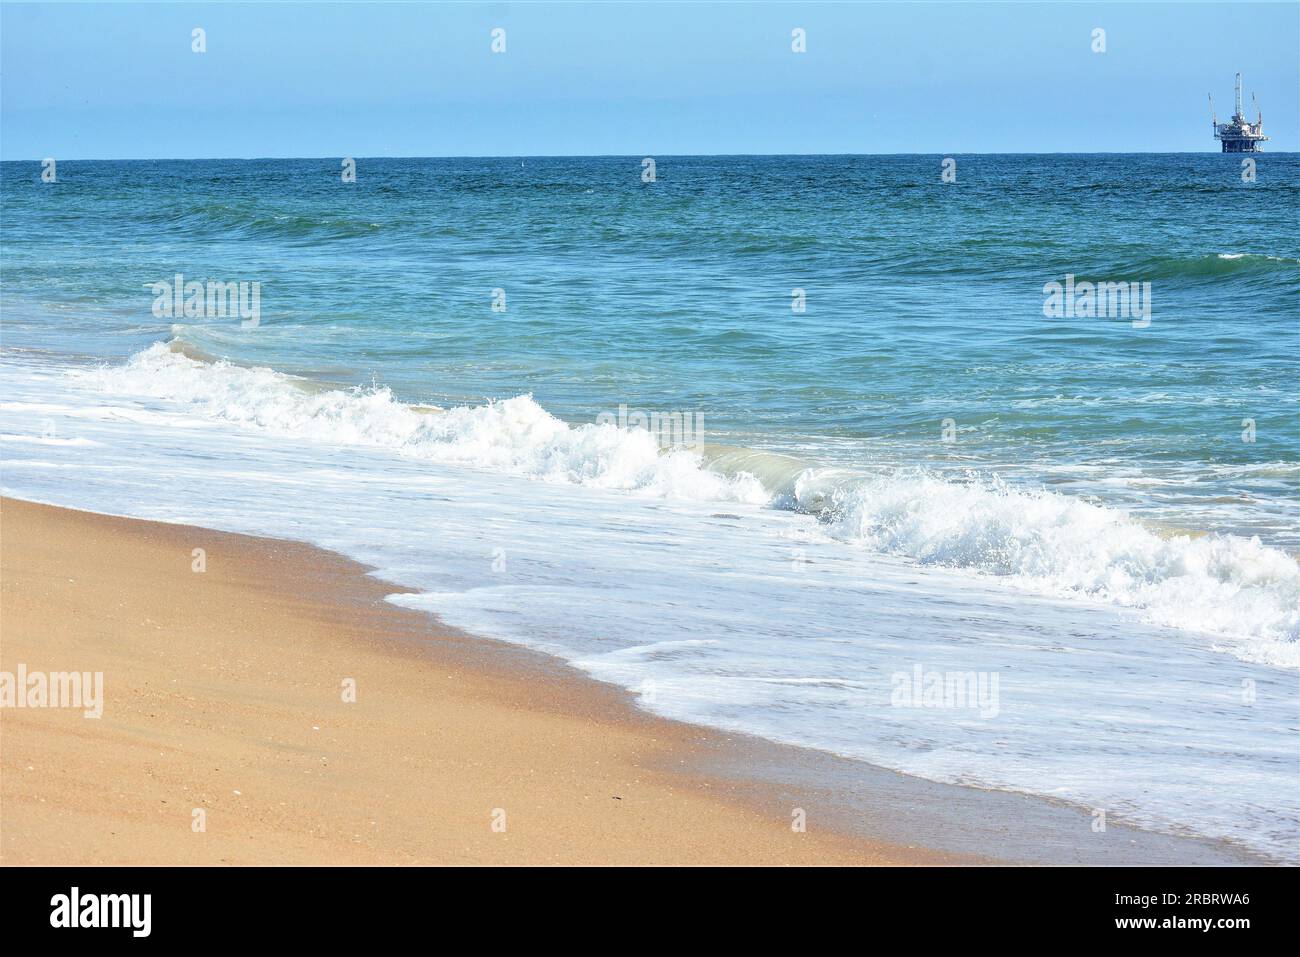 Sunny days at the beach shoreline Stock Photo